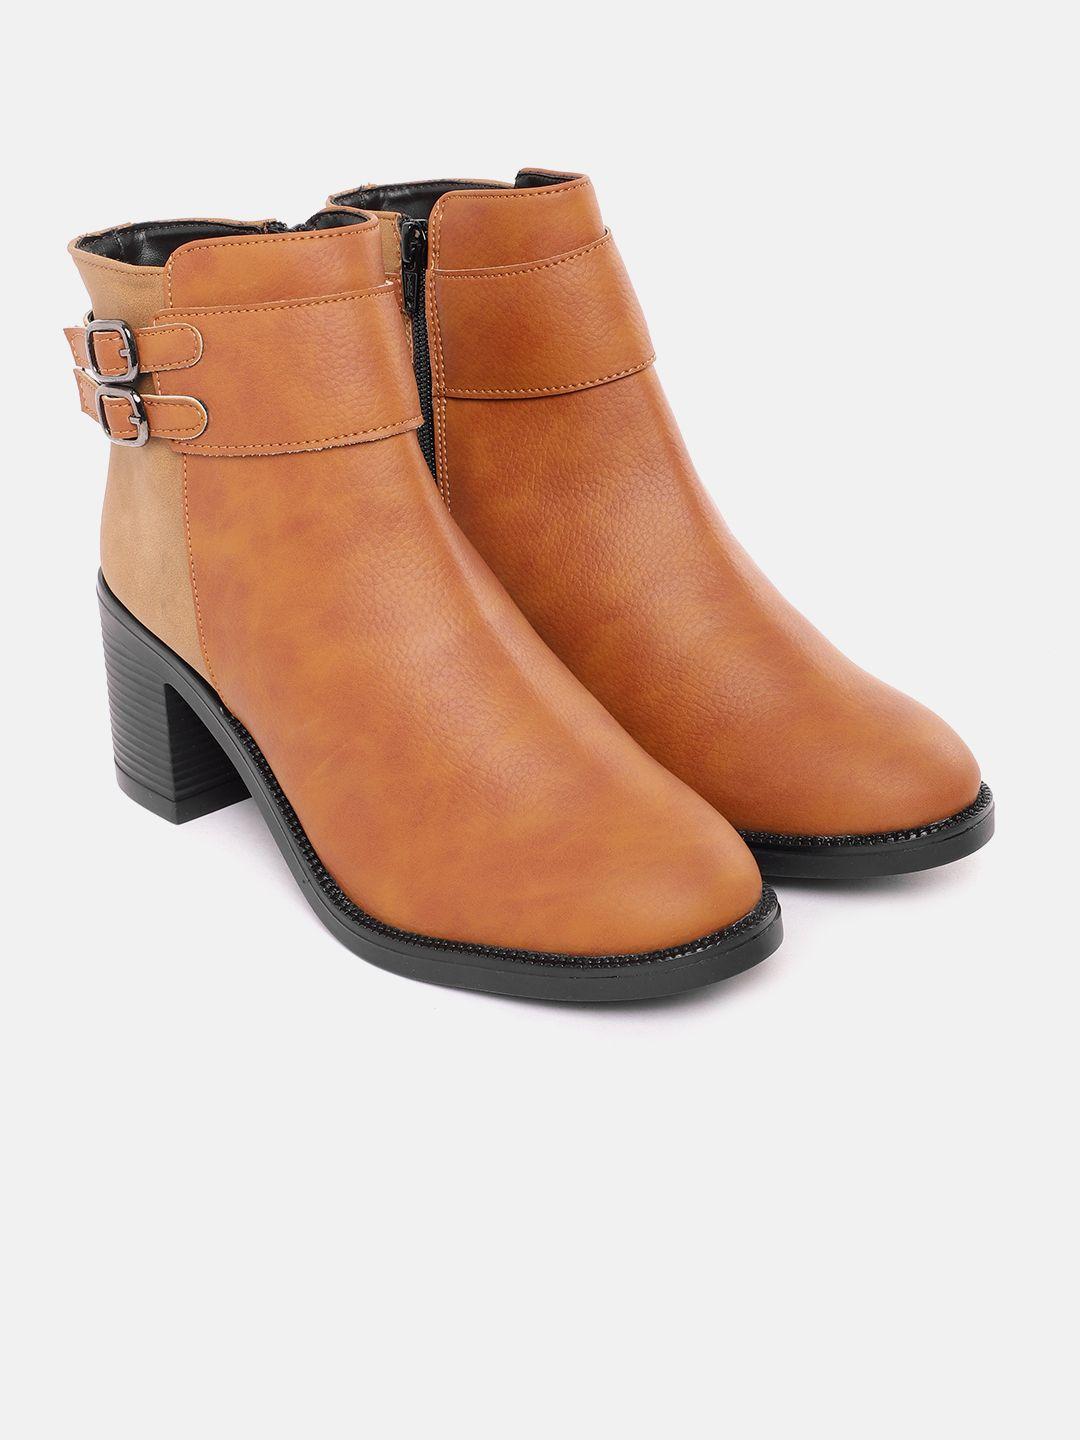 corsica women block heel mid-top boots